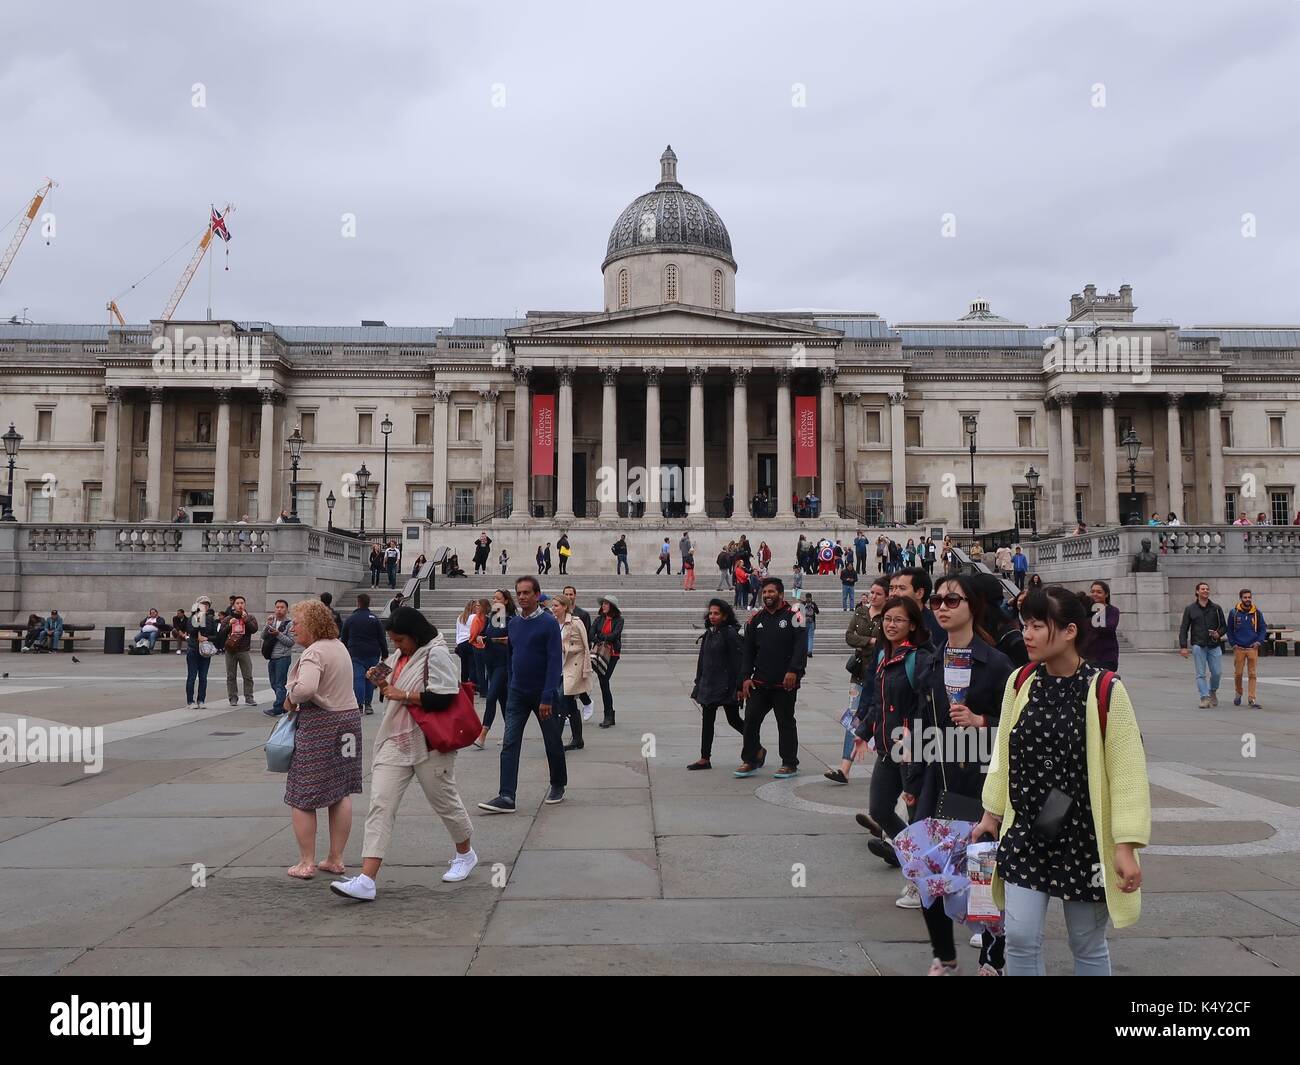 La gente camina delante de la National Gallery, Trafalgar Square, Londres, Reino Unido. Foto de stock